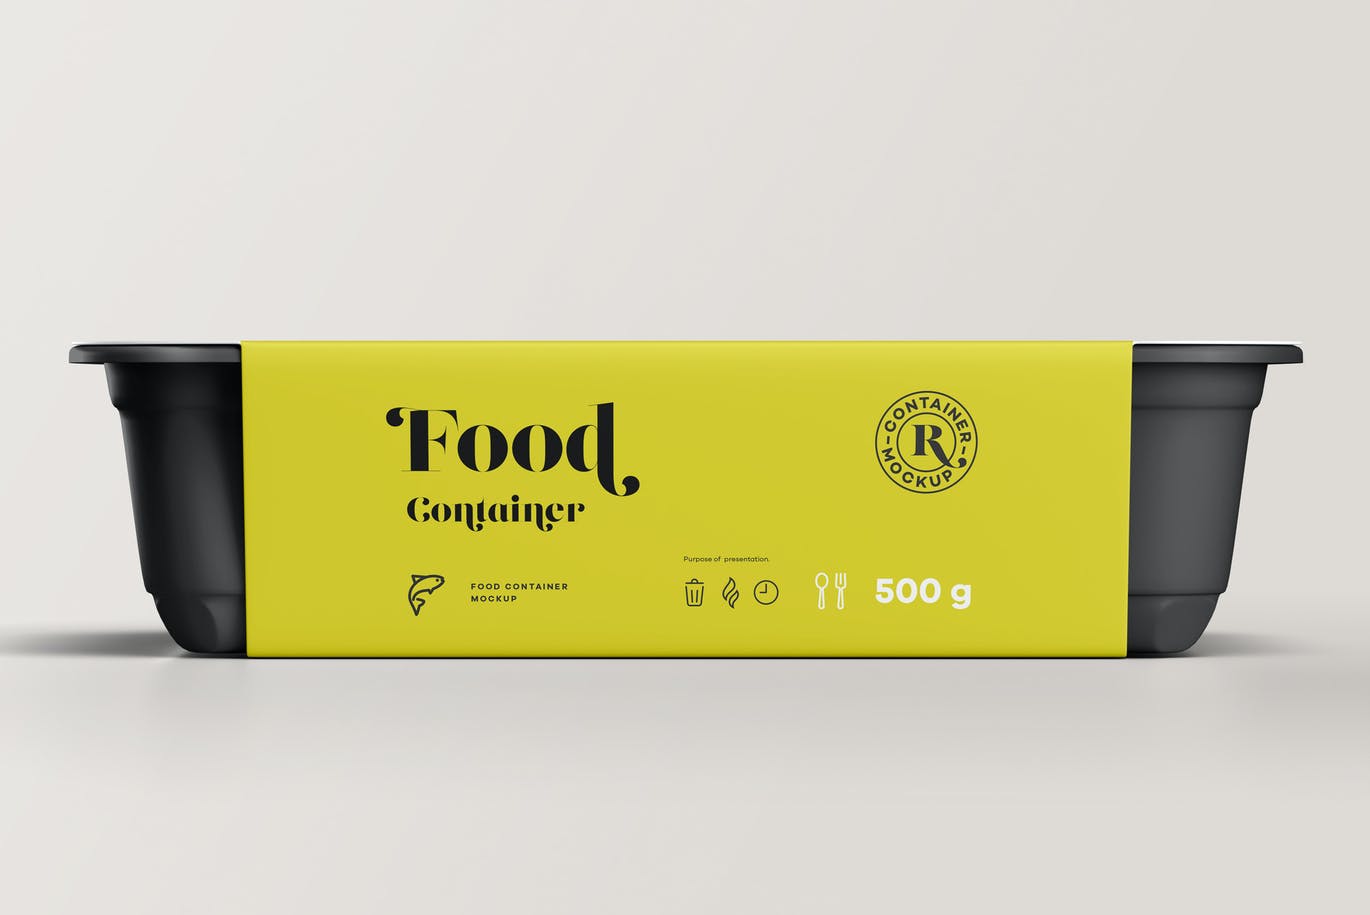 快餐食品外卖包装盒设计提案样机PSD模板 Food Cont